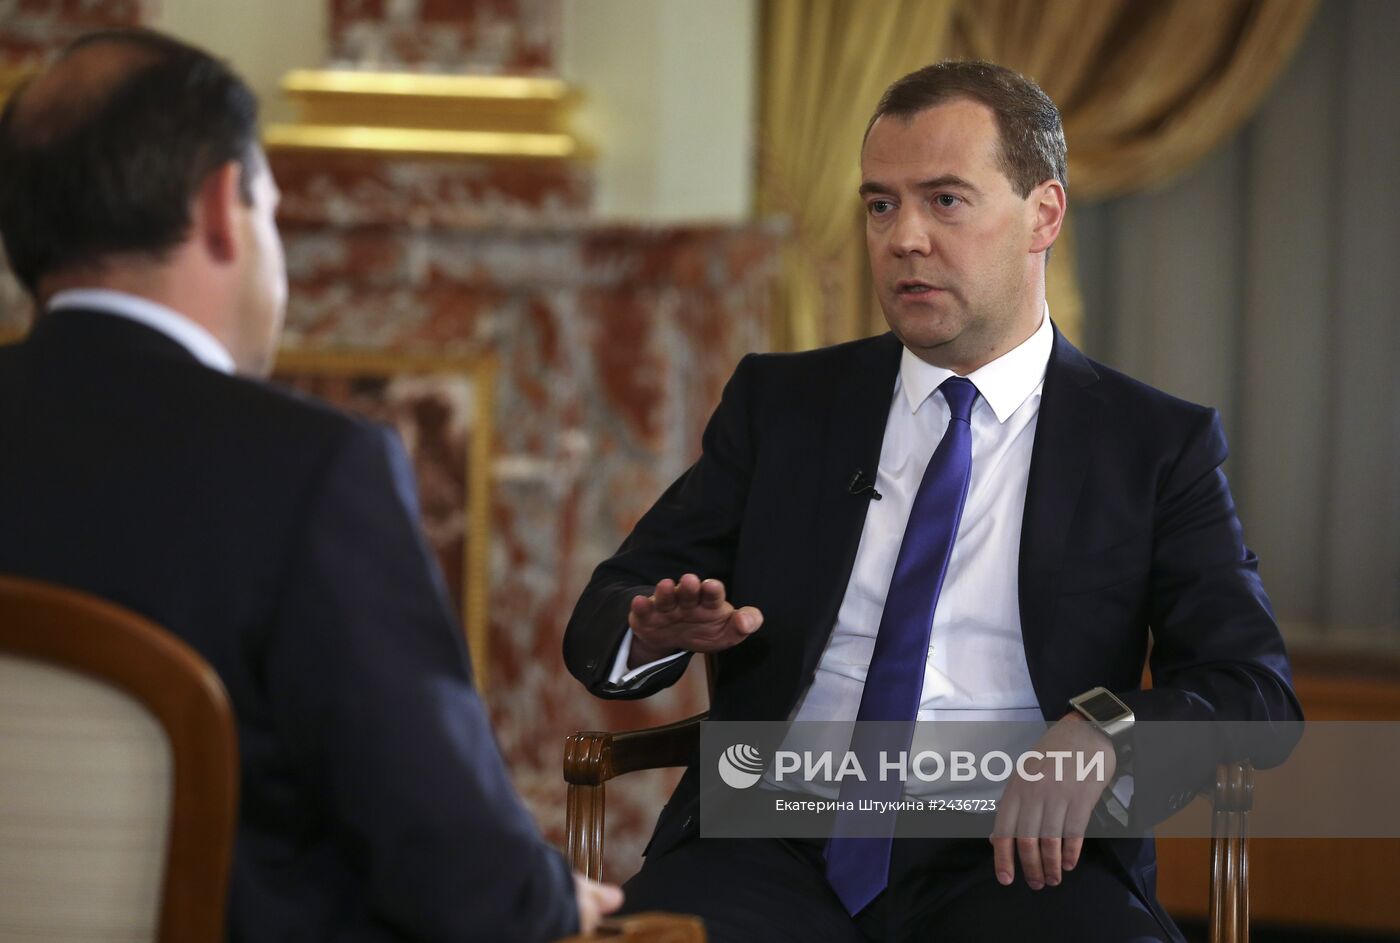 Интервью Дмитрия Медведева телеканалу "Россия"